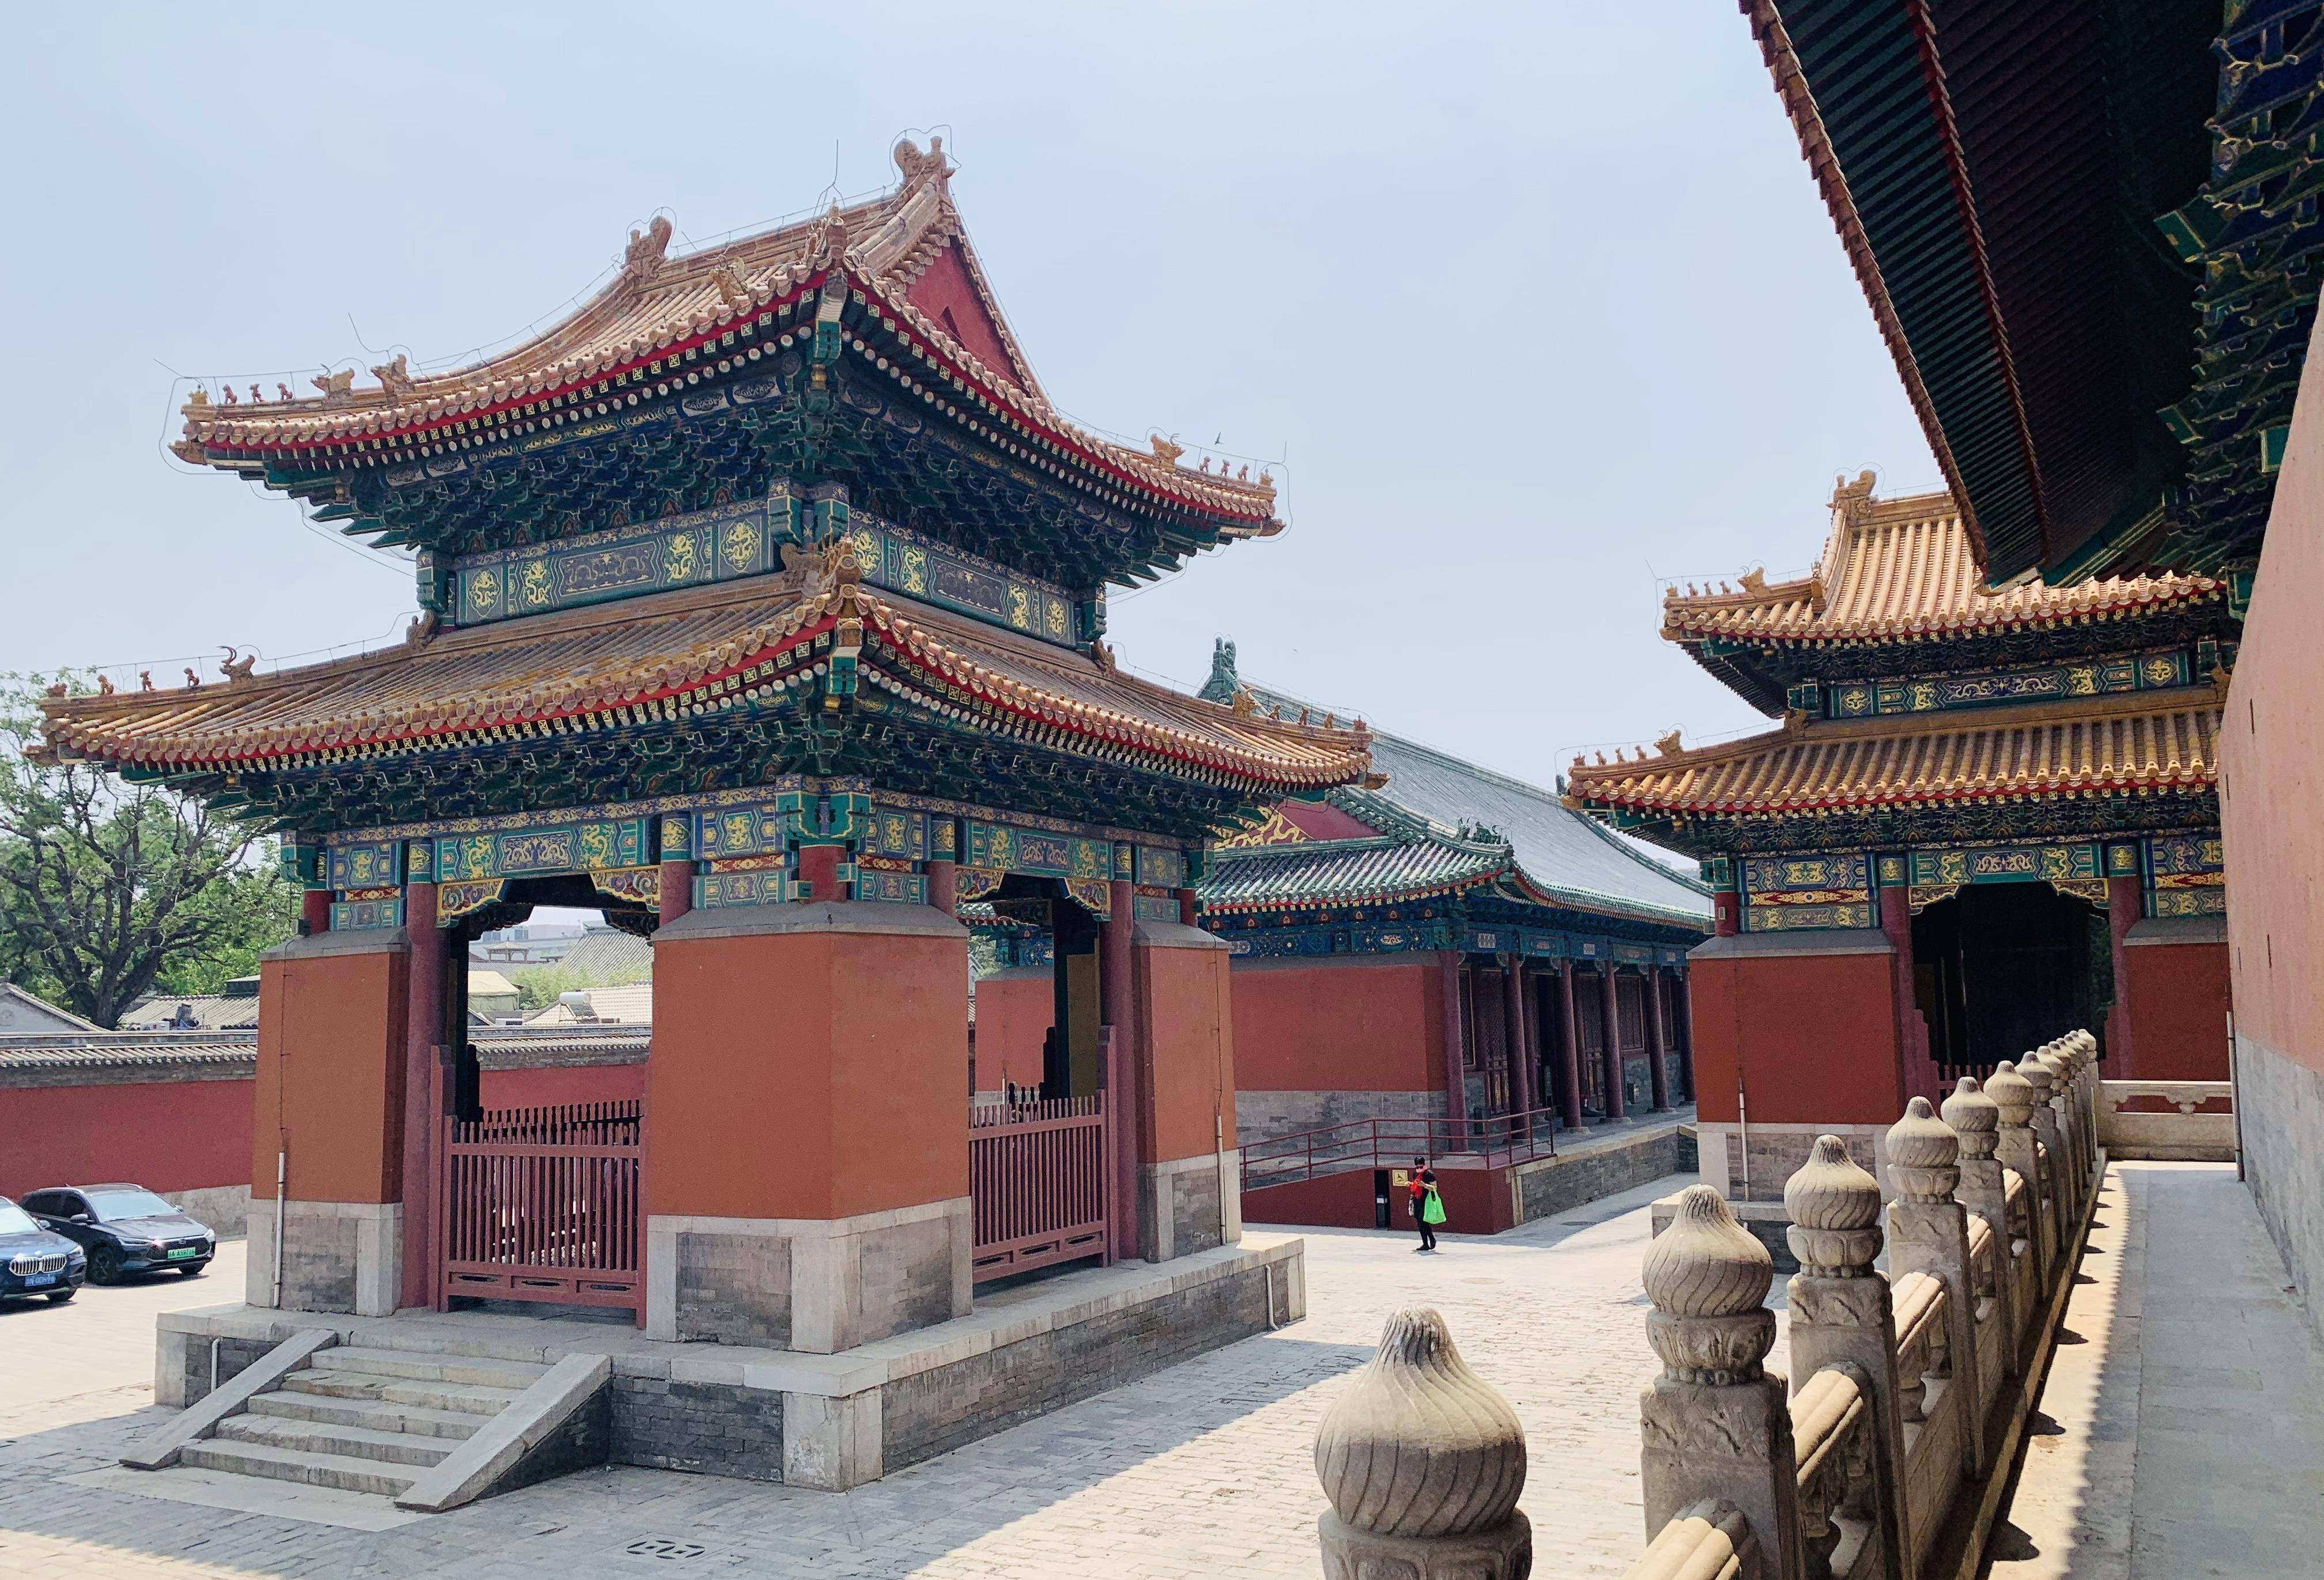 好了!以上就是北京历代帝王庙的简要介绍了!